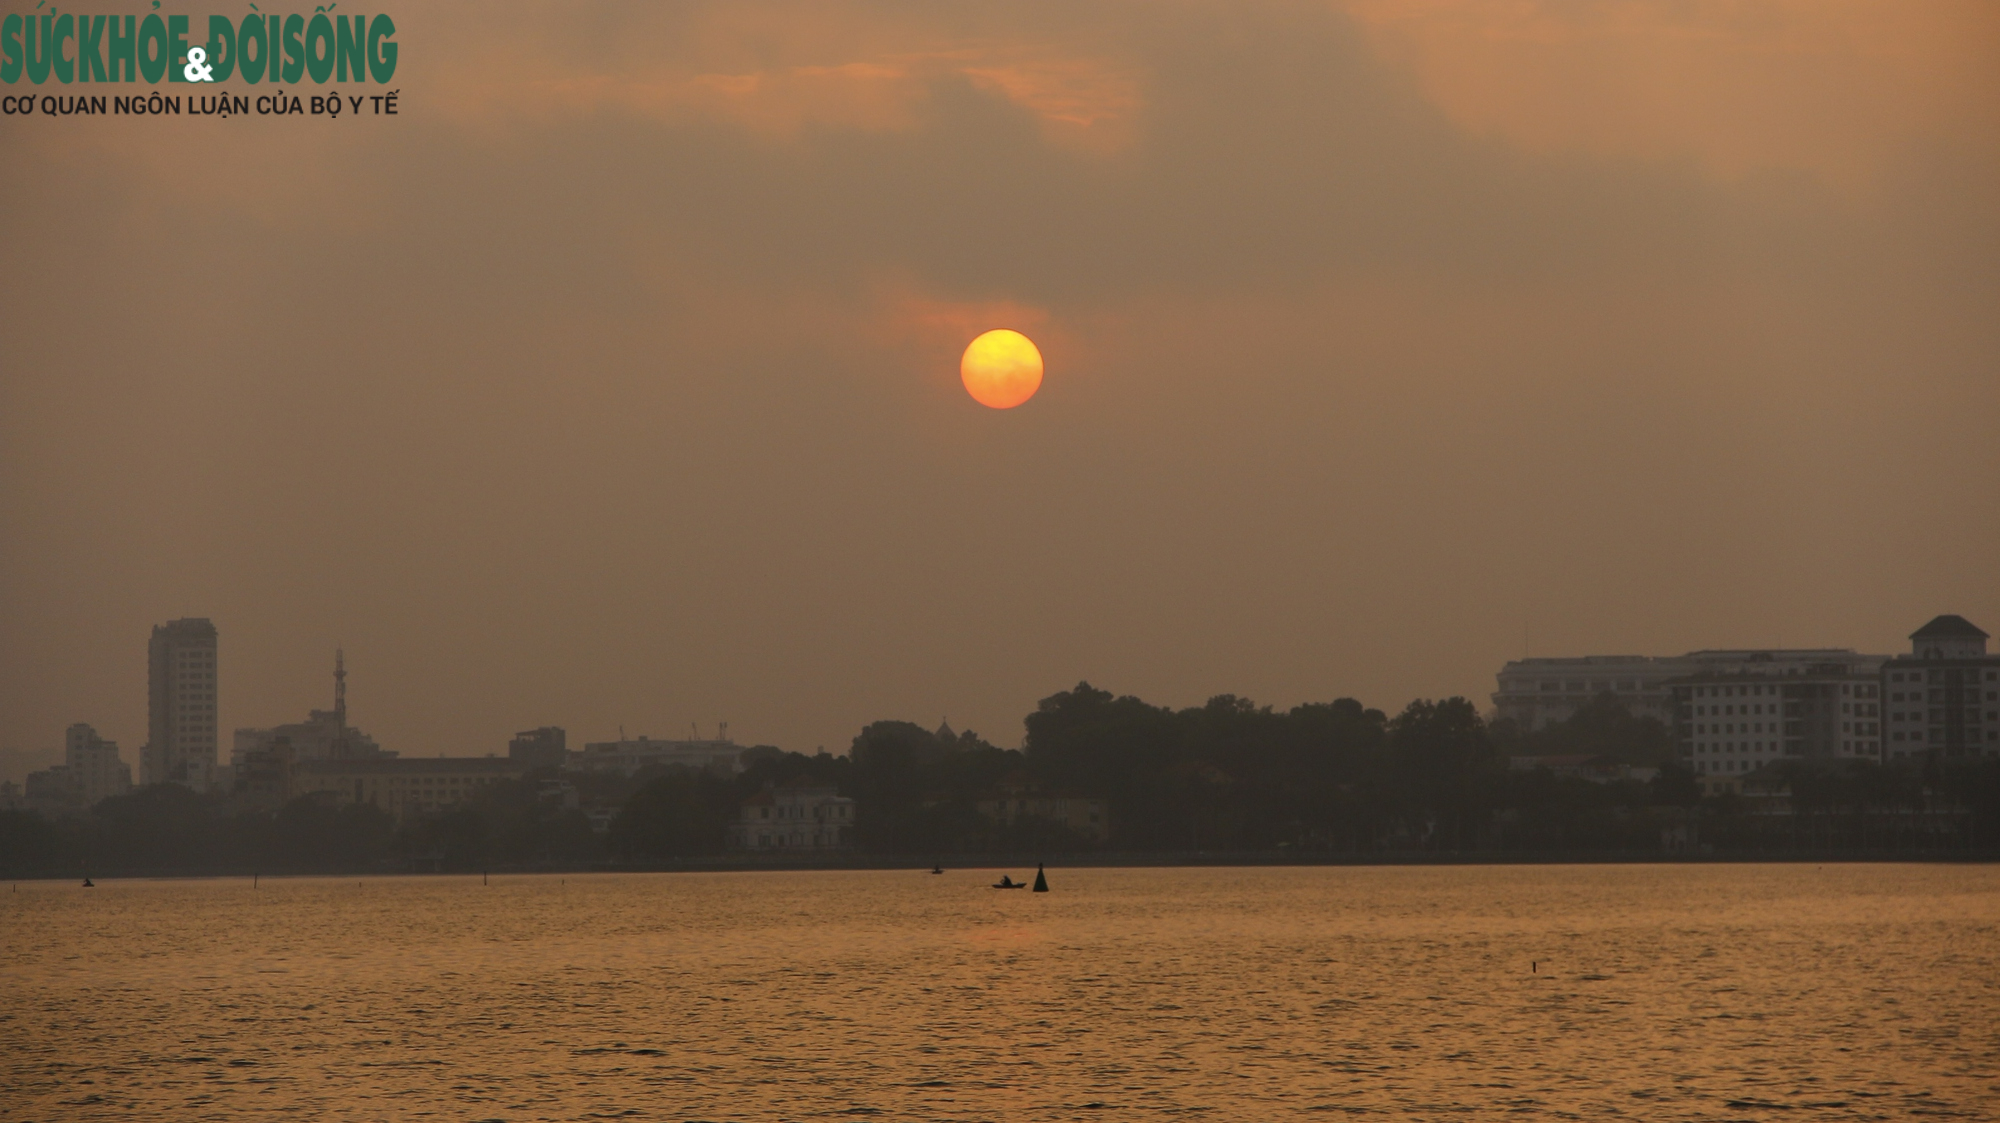 Hoàng hôn Hồ Tây là một trong những phong cảnh đẹp nhất của Hà Nội, từng bức ảnh khiến người ngắm say mê. Hãy cùng chiêm ngưỡng và thư giãn trong không gian yên tĩnh, thanh bình của Hồ Tây.